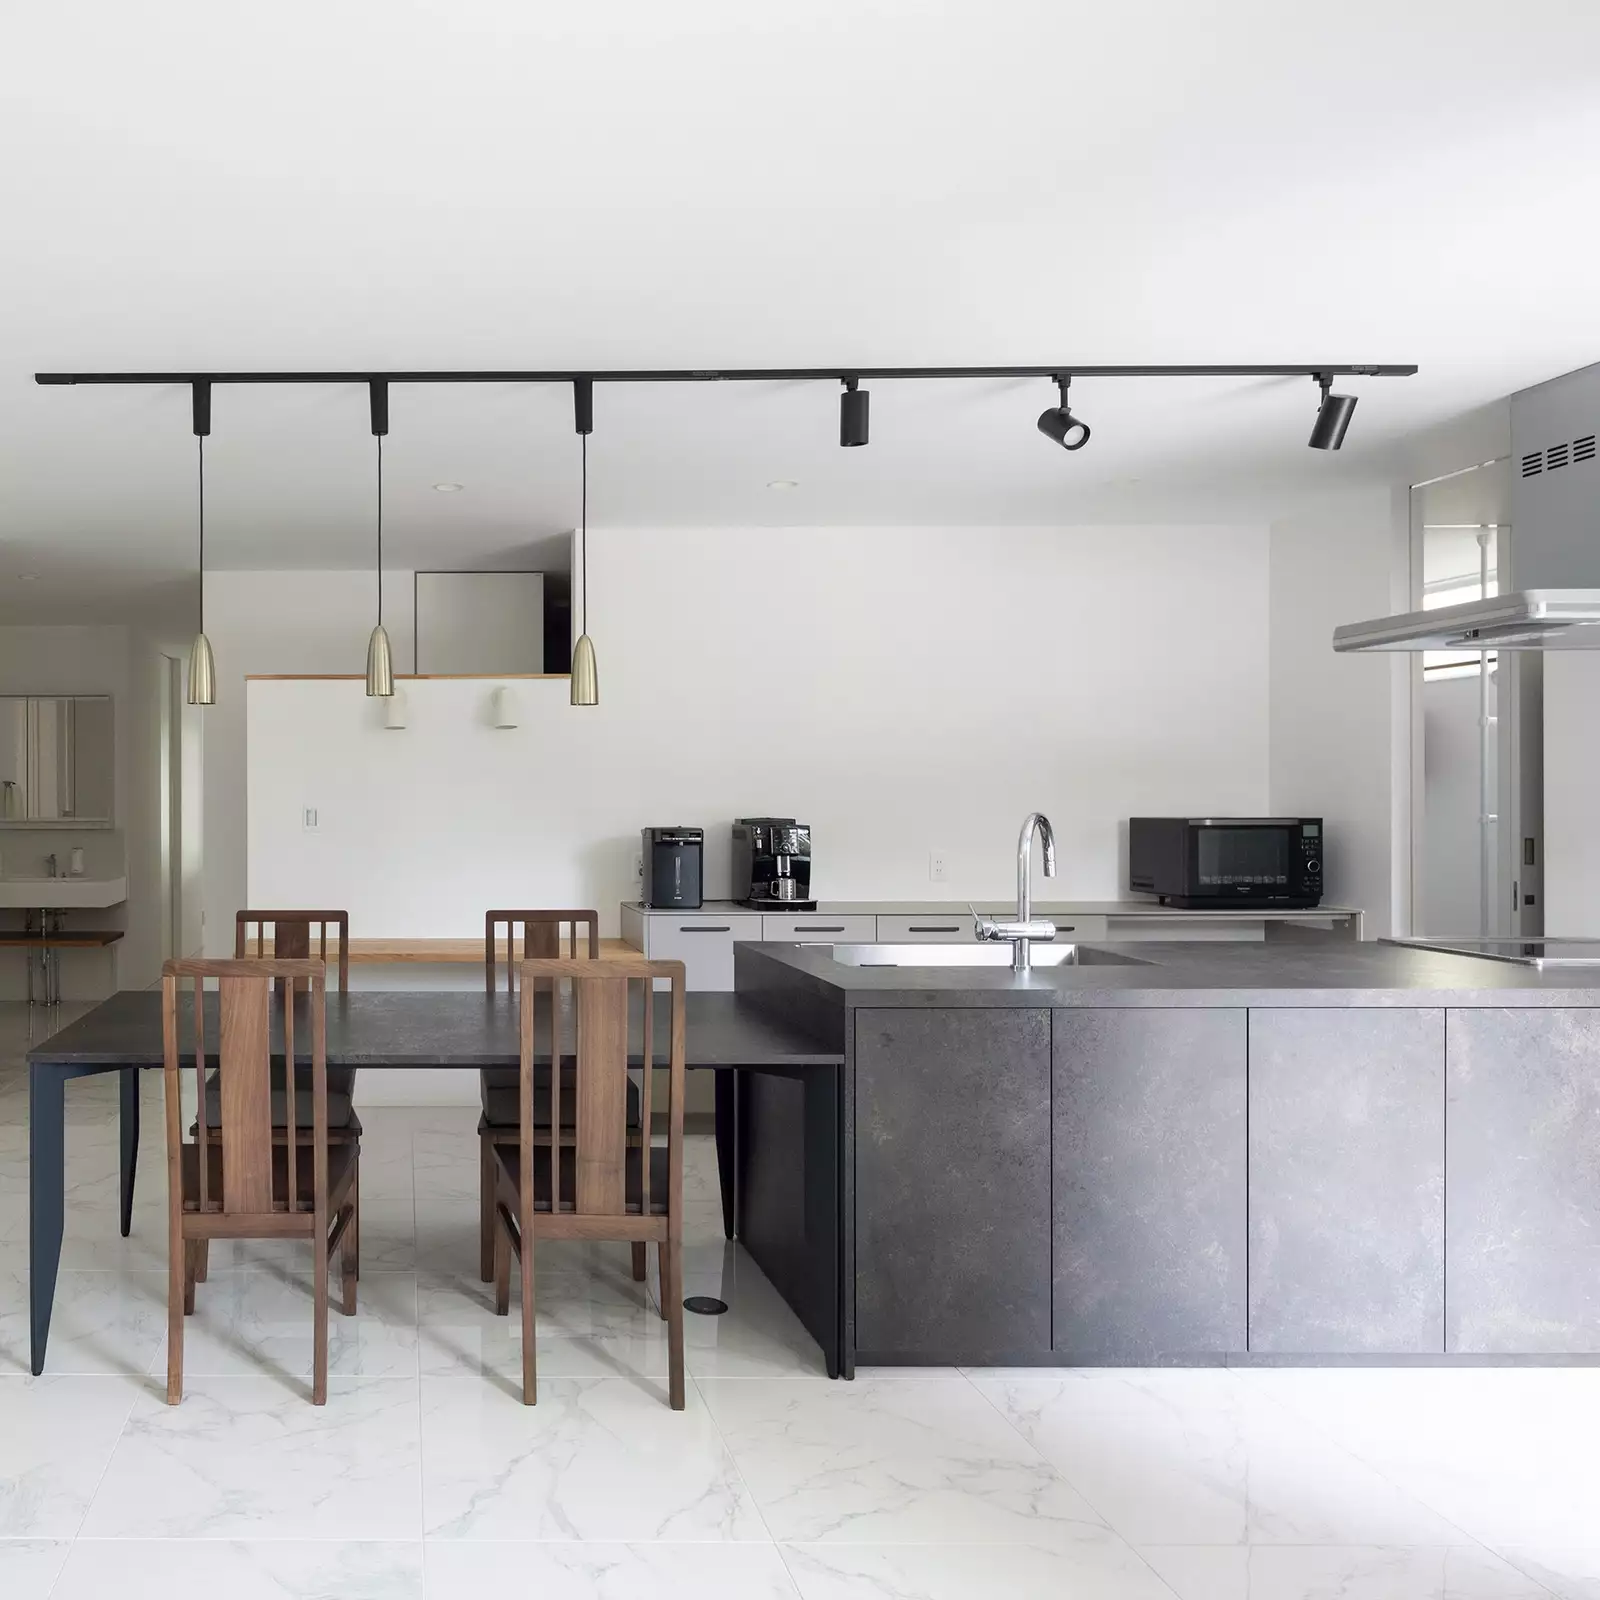 R+houseの物件のキッチンの写真。濃いグレーで統一されたアイランドキッチンとダイニングテーブル。白いタイルの床と相まっておしゃれ。